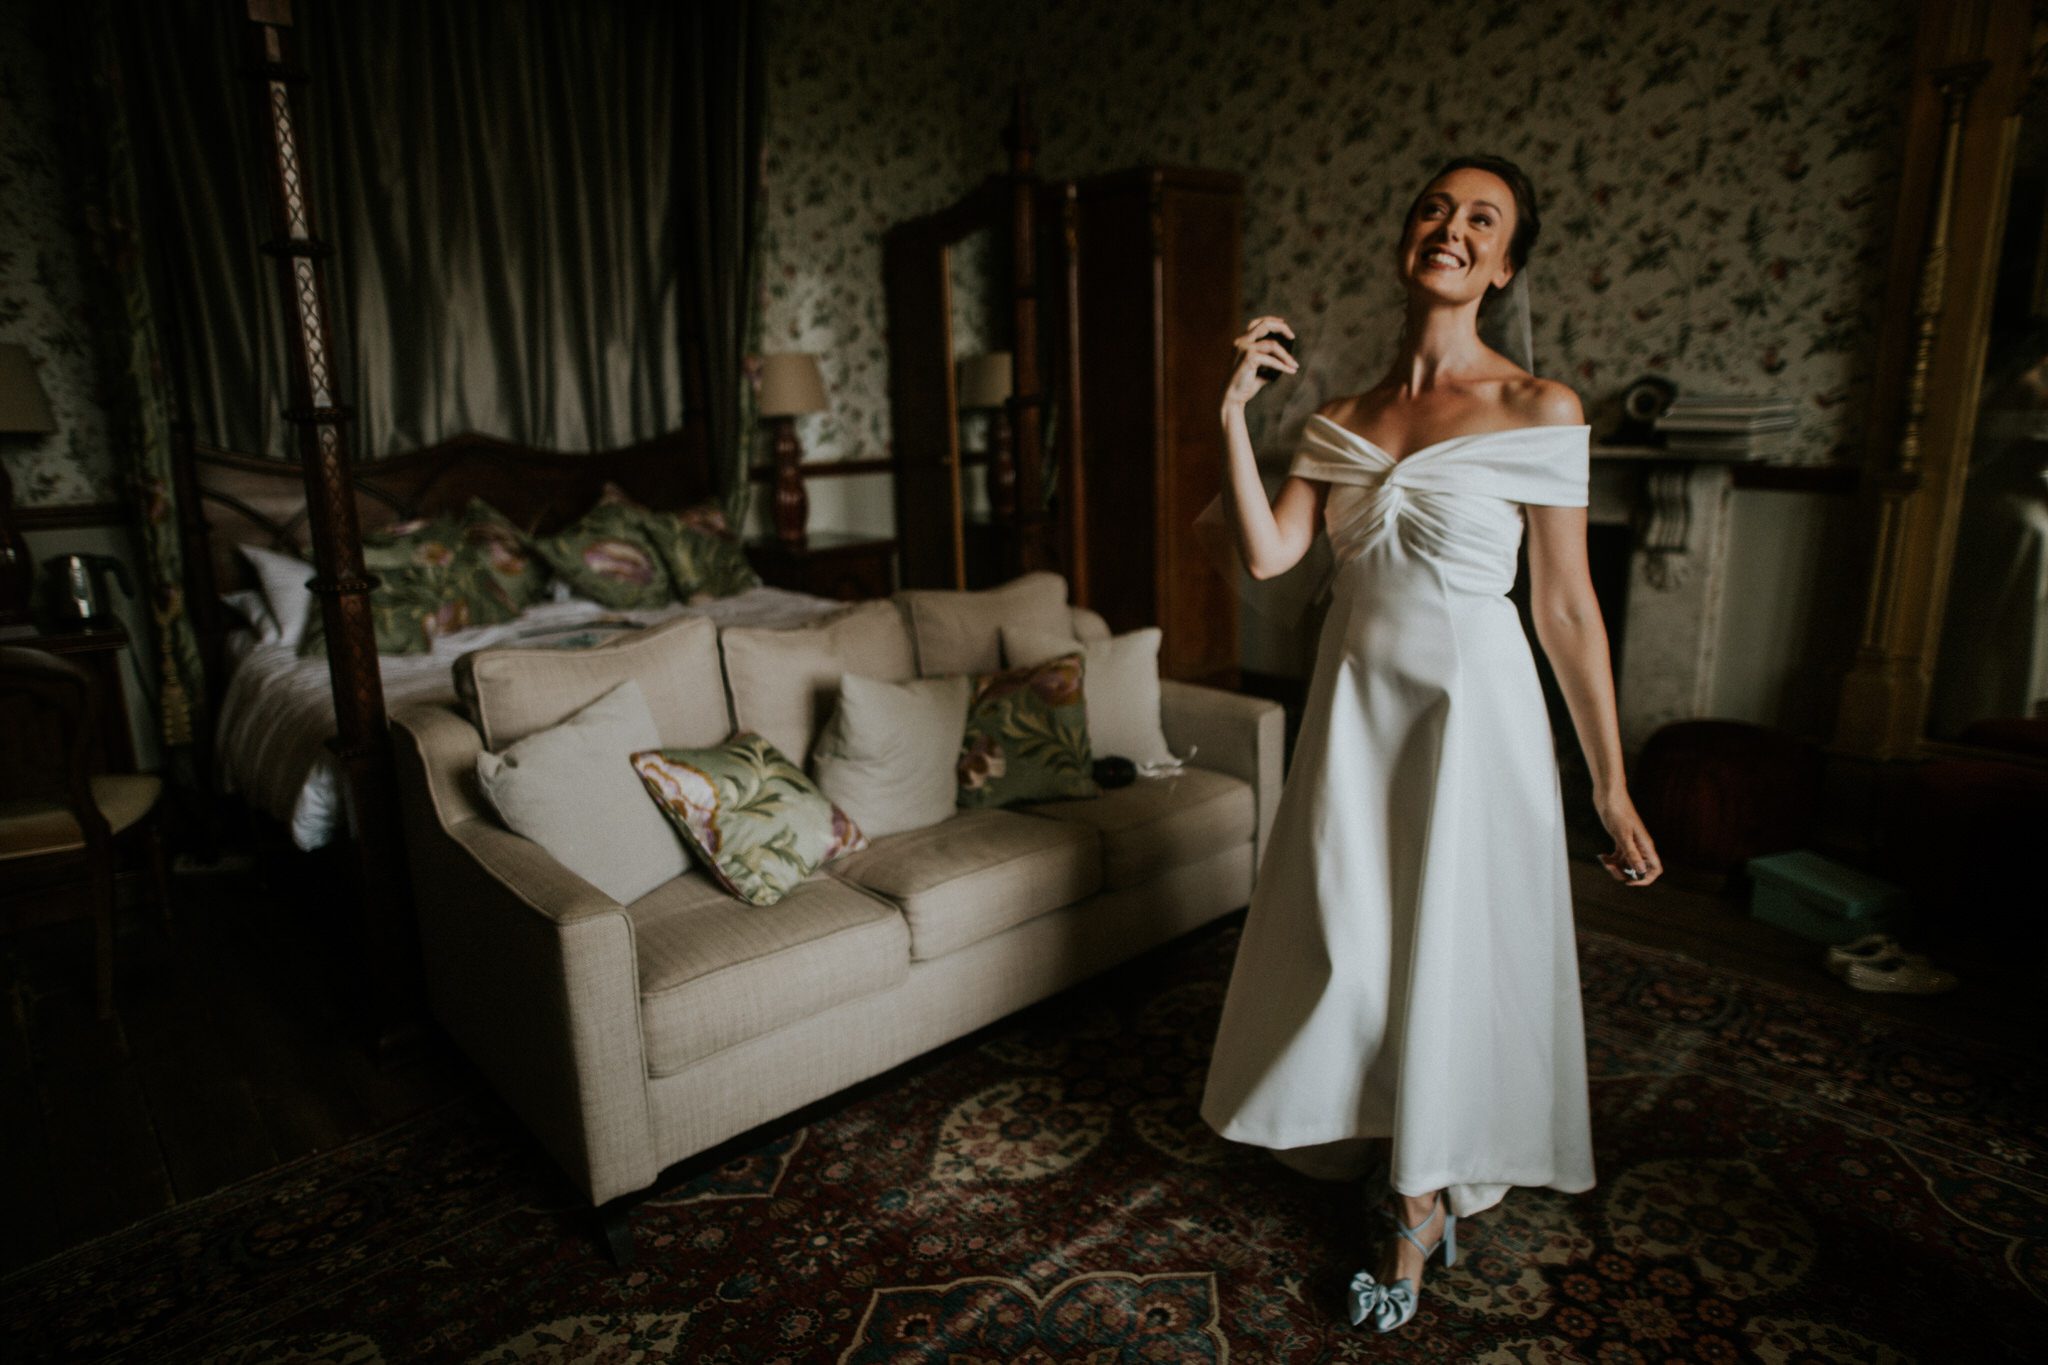 A bride sprays perfume when getting ready for her Devon wedding